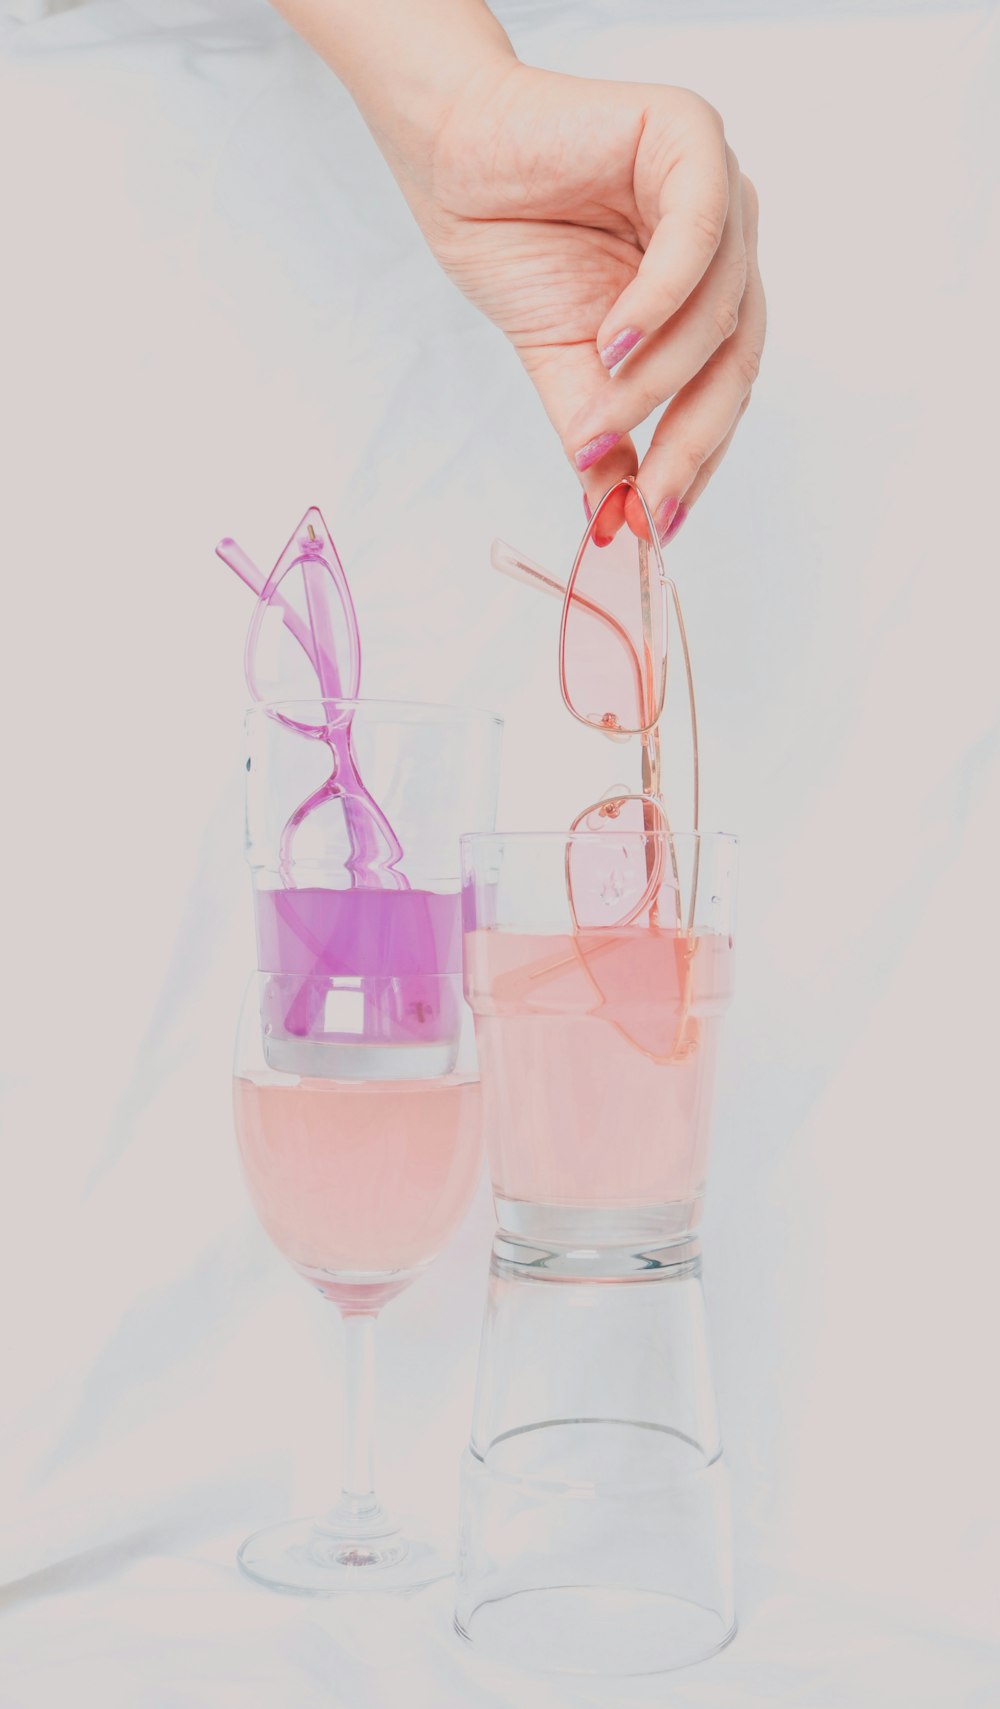 persona sosteniendo un vaso transparente con líquido rosado